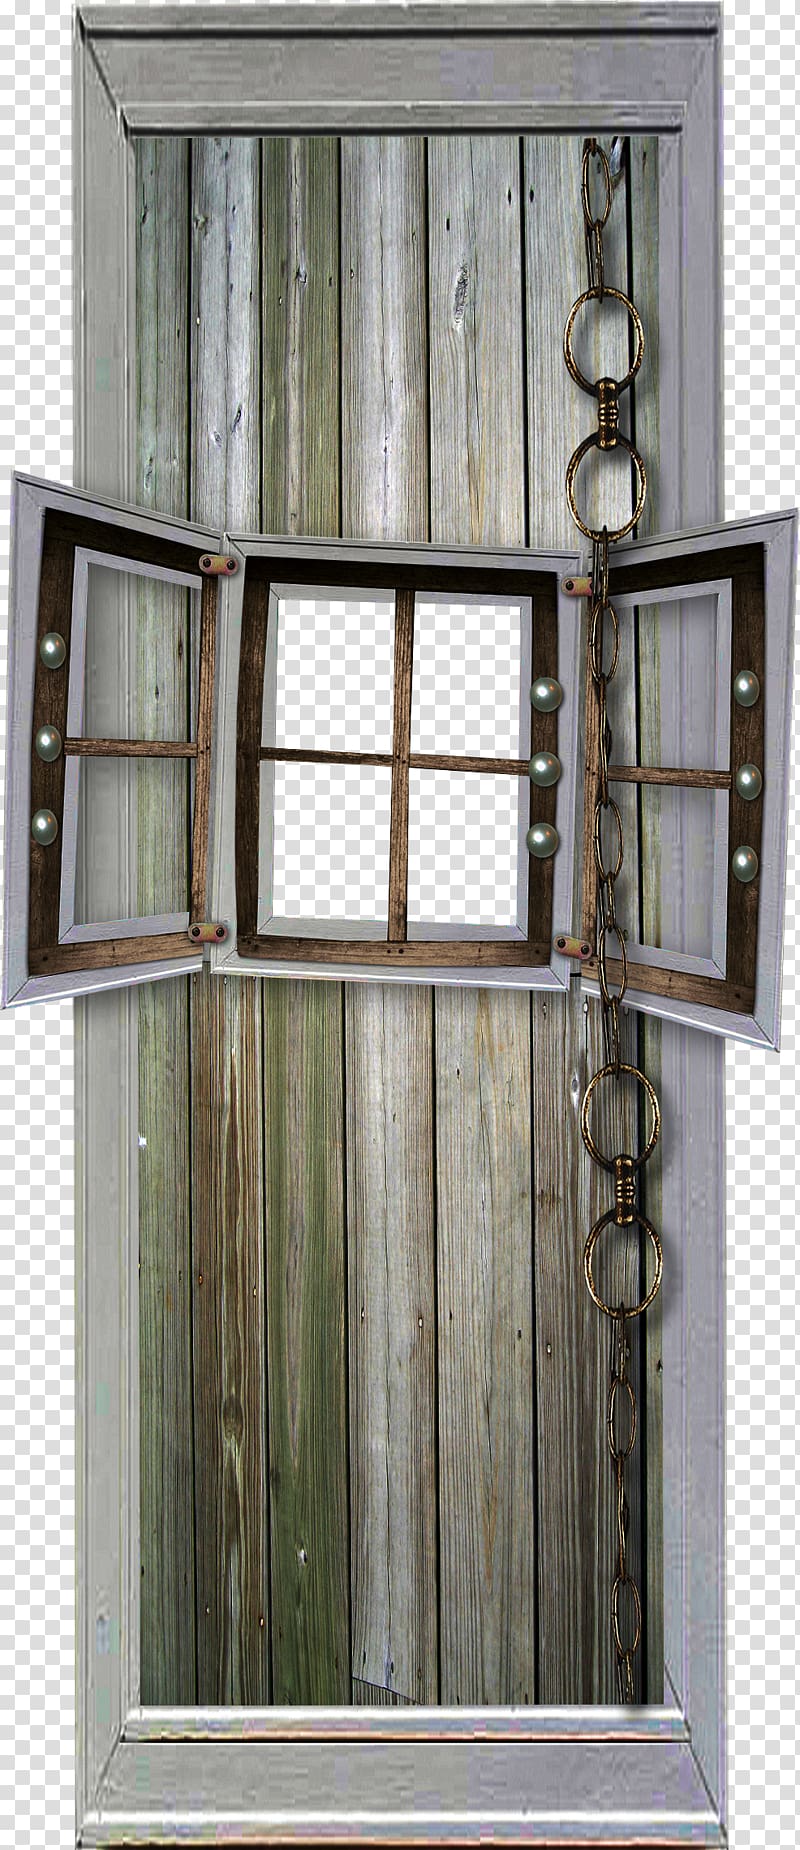 Sash window Facade Door Metal, Doors and windows metal ring transparent background PNG clipart